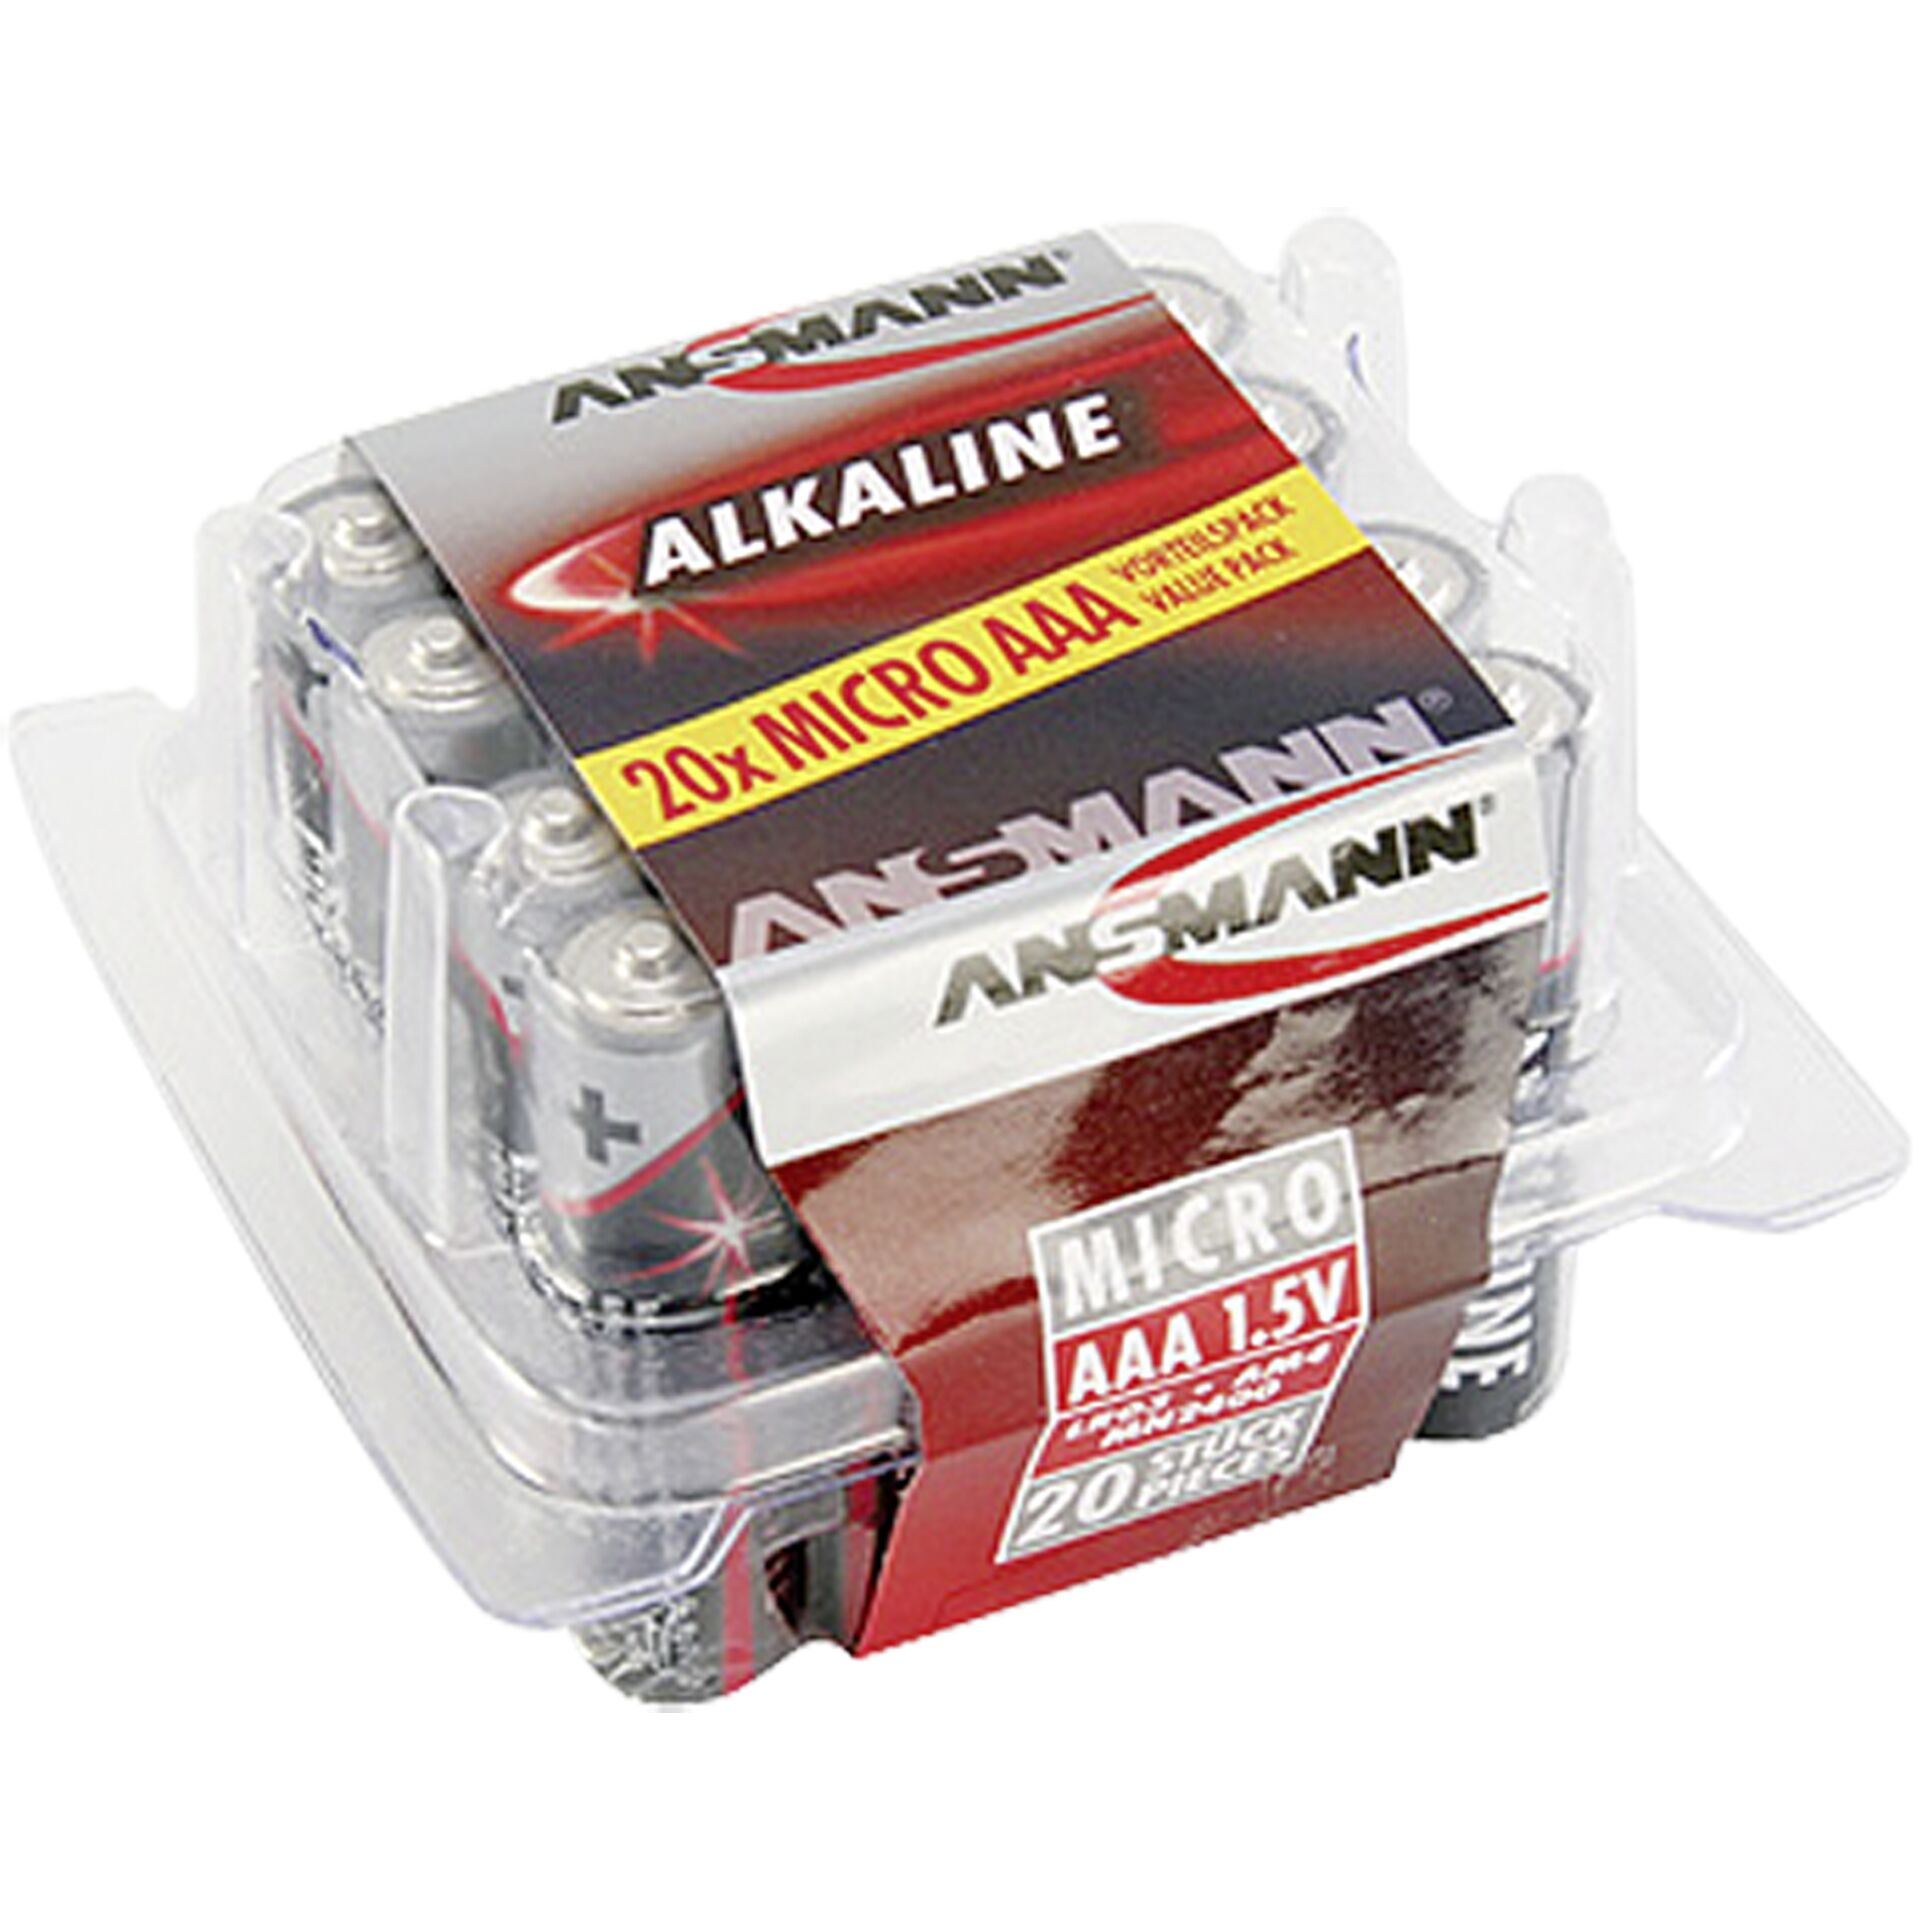 1x20 Ansmann Alkaline Micro AAA LR 03 red-line Box       501